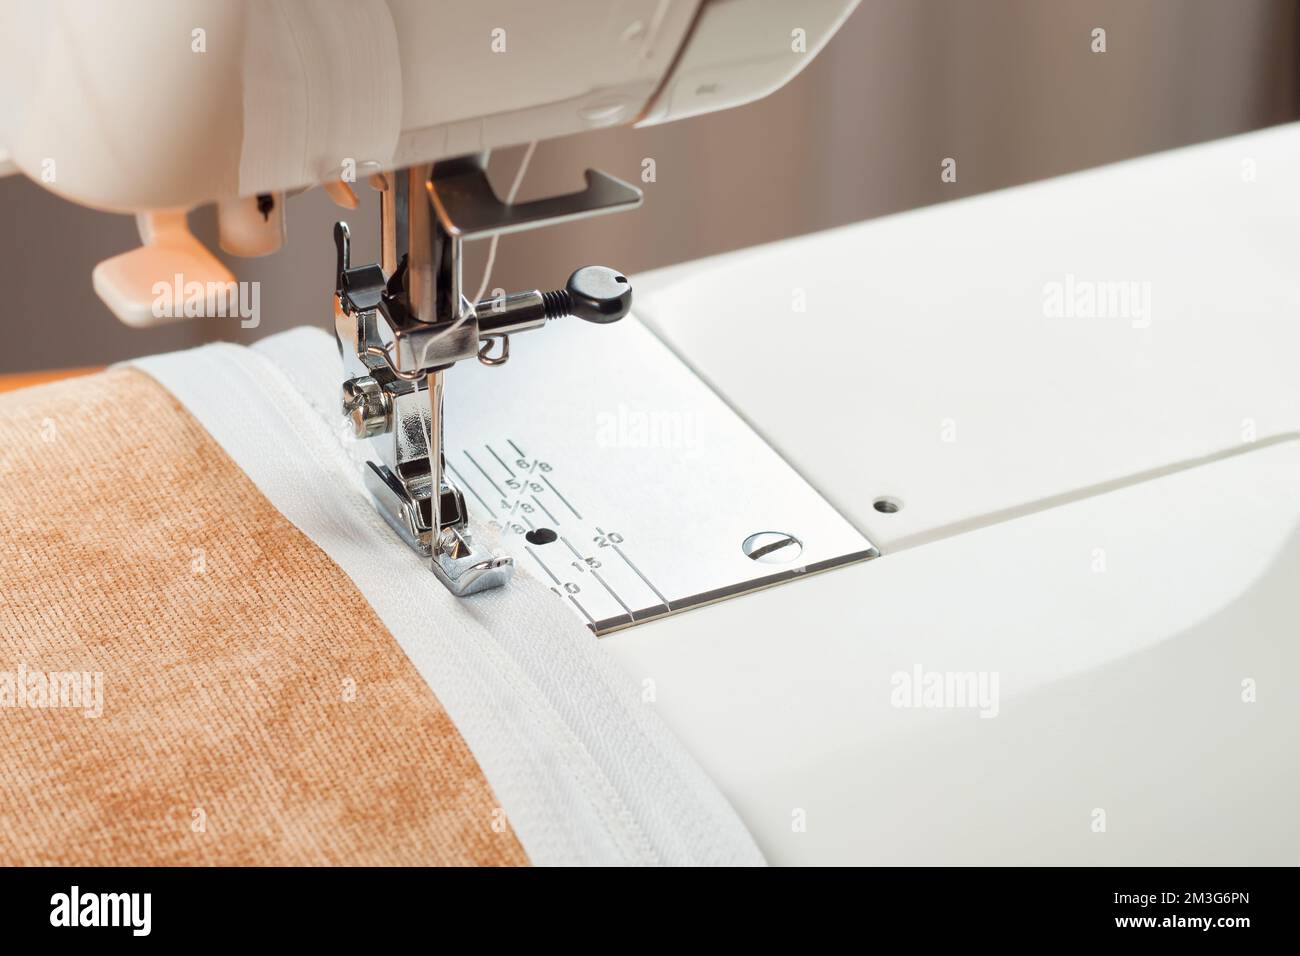 La machine à coudre moderne fait des coutures sur la fermeture éclair sur un vêtement beige. processus de couture Banque D'Images